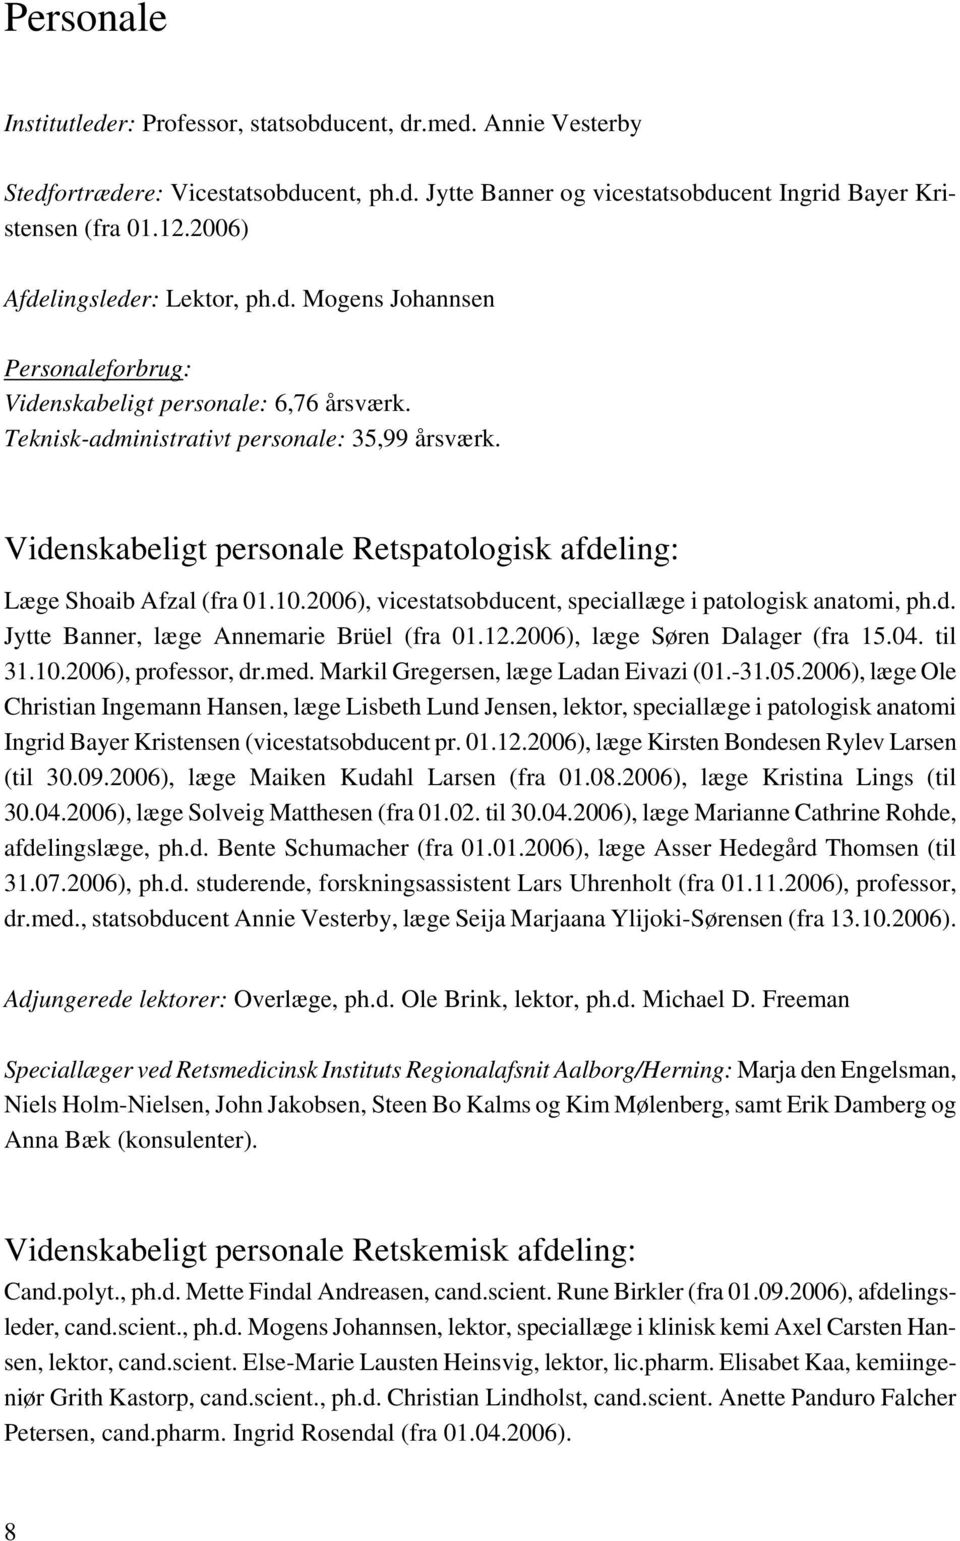 Videnskabeligt personale Retspatologisk afdeling: Læge Shoaib Afzal (fra 01.10.2006), vicestatsobducent, speciallæge i patologisk anatomi, ph.d. Jytte Banner, læge Annemarie Brüel (fra 01.12.